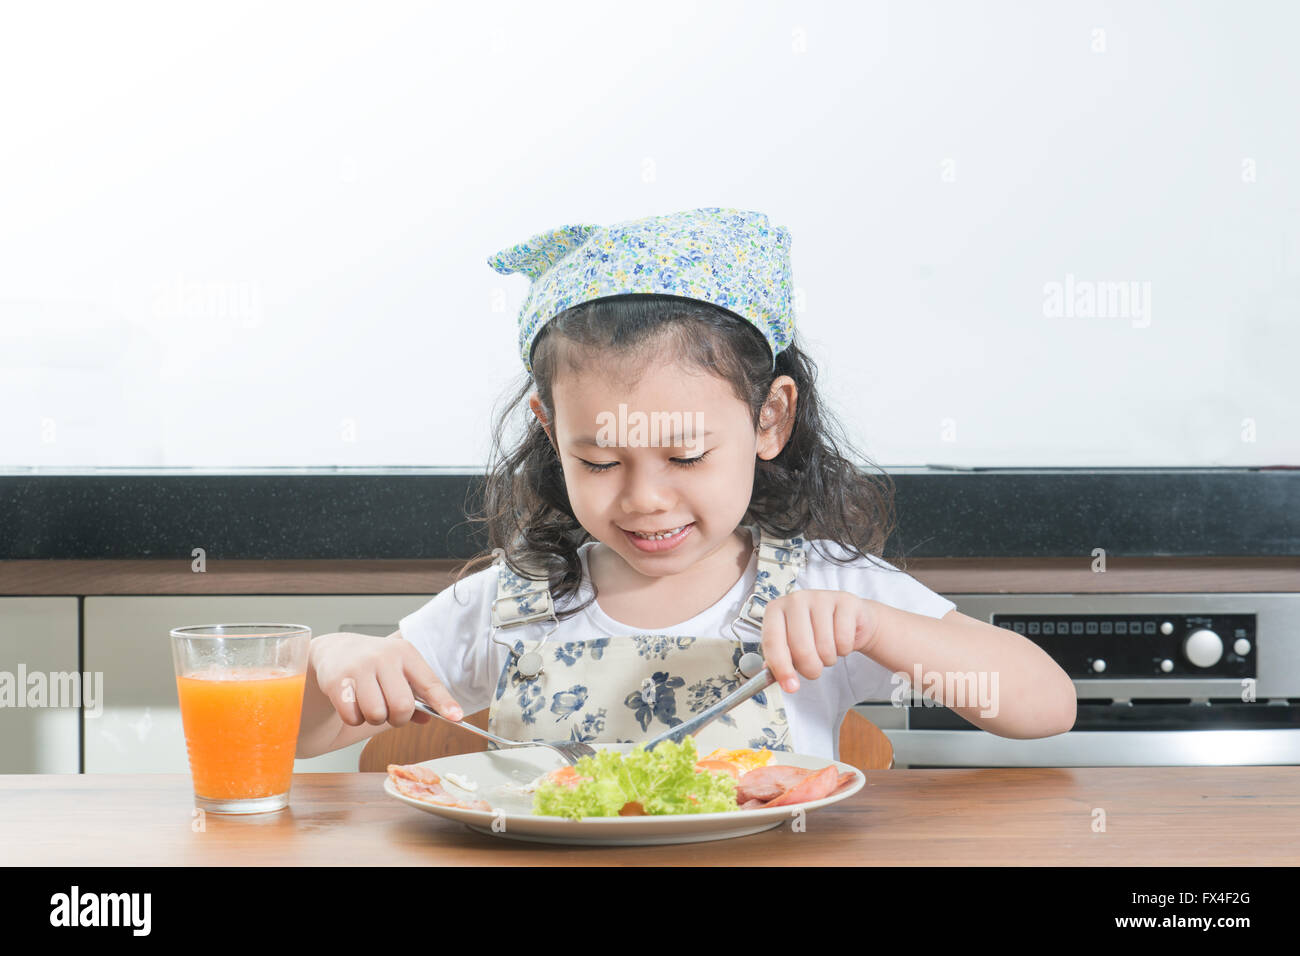 Familie, Kinder und glückliche Menschen Konzept - Asiatin Kind essen amerikanisches Frühstück im Haus Stockfoto